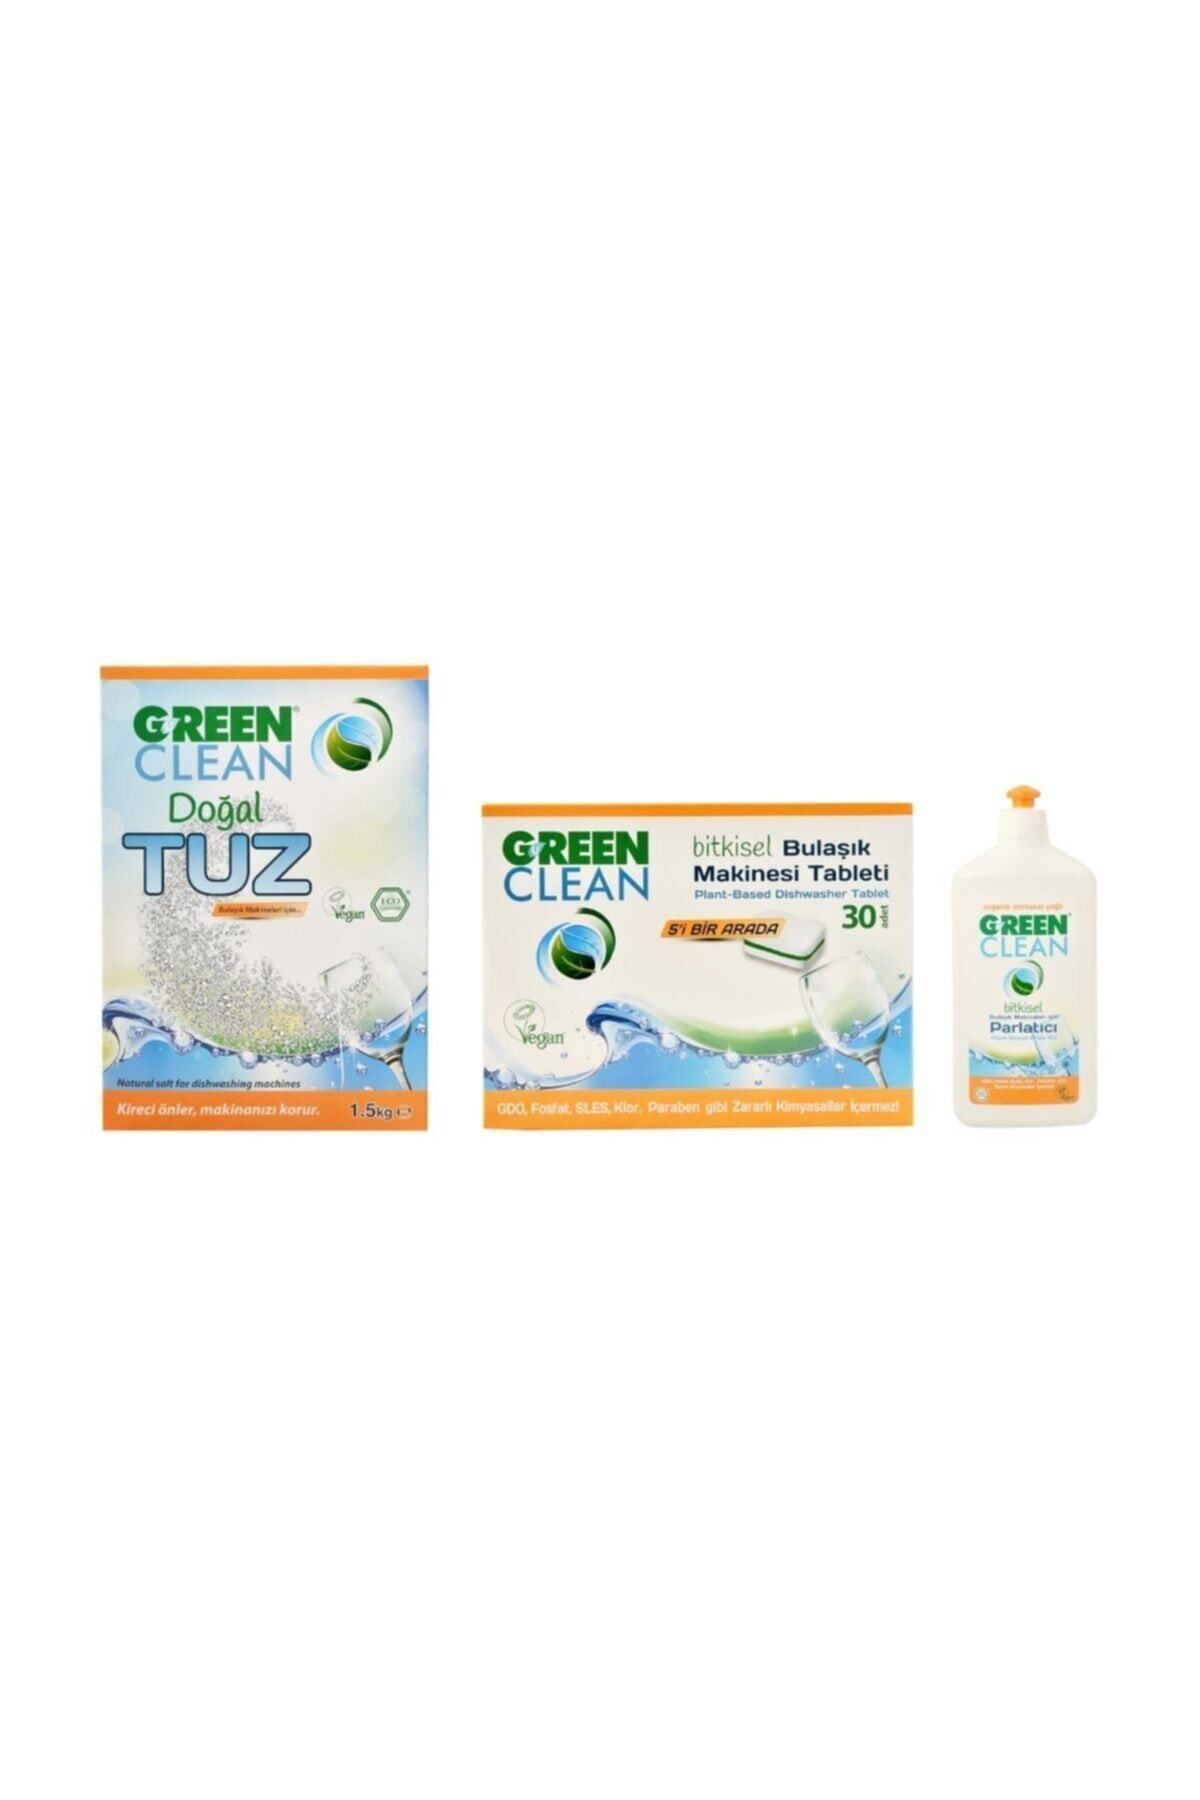 Green Clean Doğal Tuz 1,5 kg, Bulaşık Tableti 30'lu ve Parlatıcı 500 ml